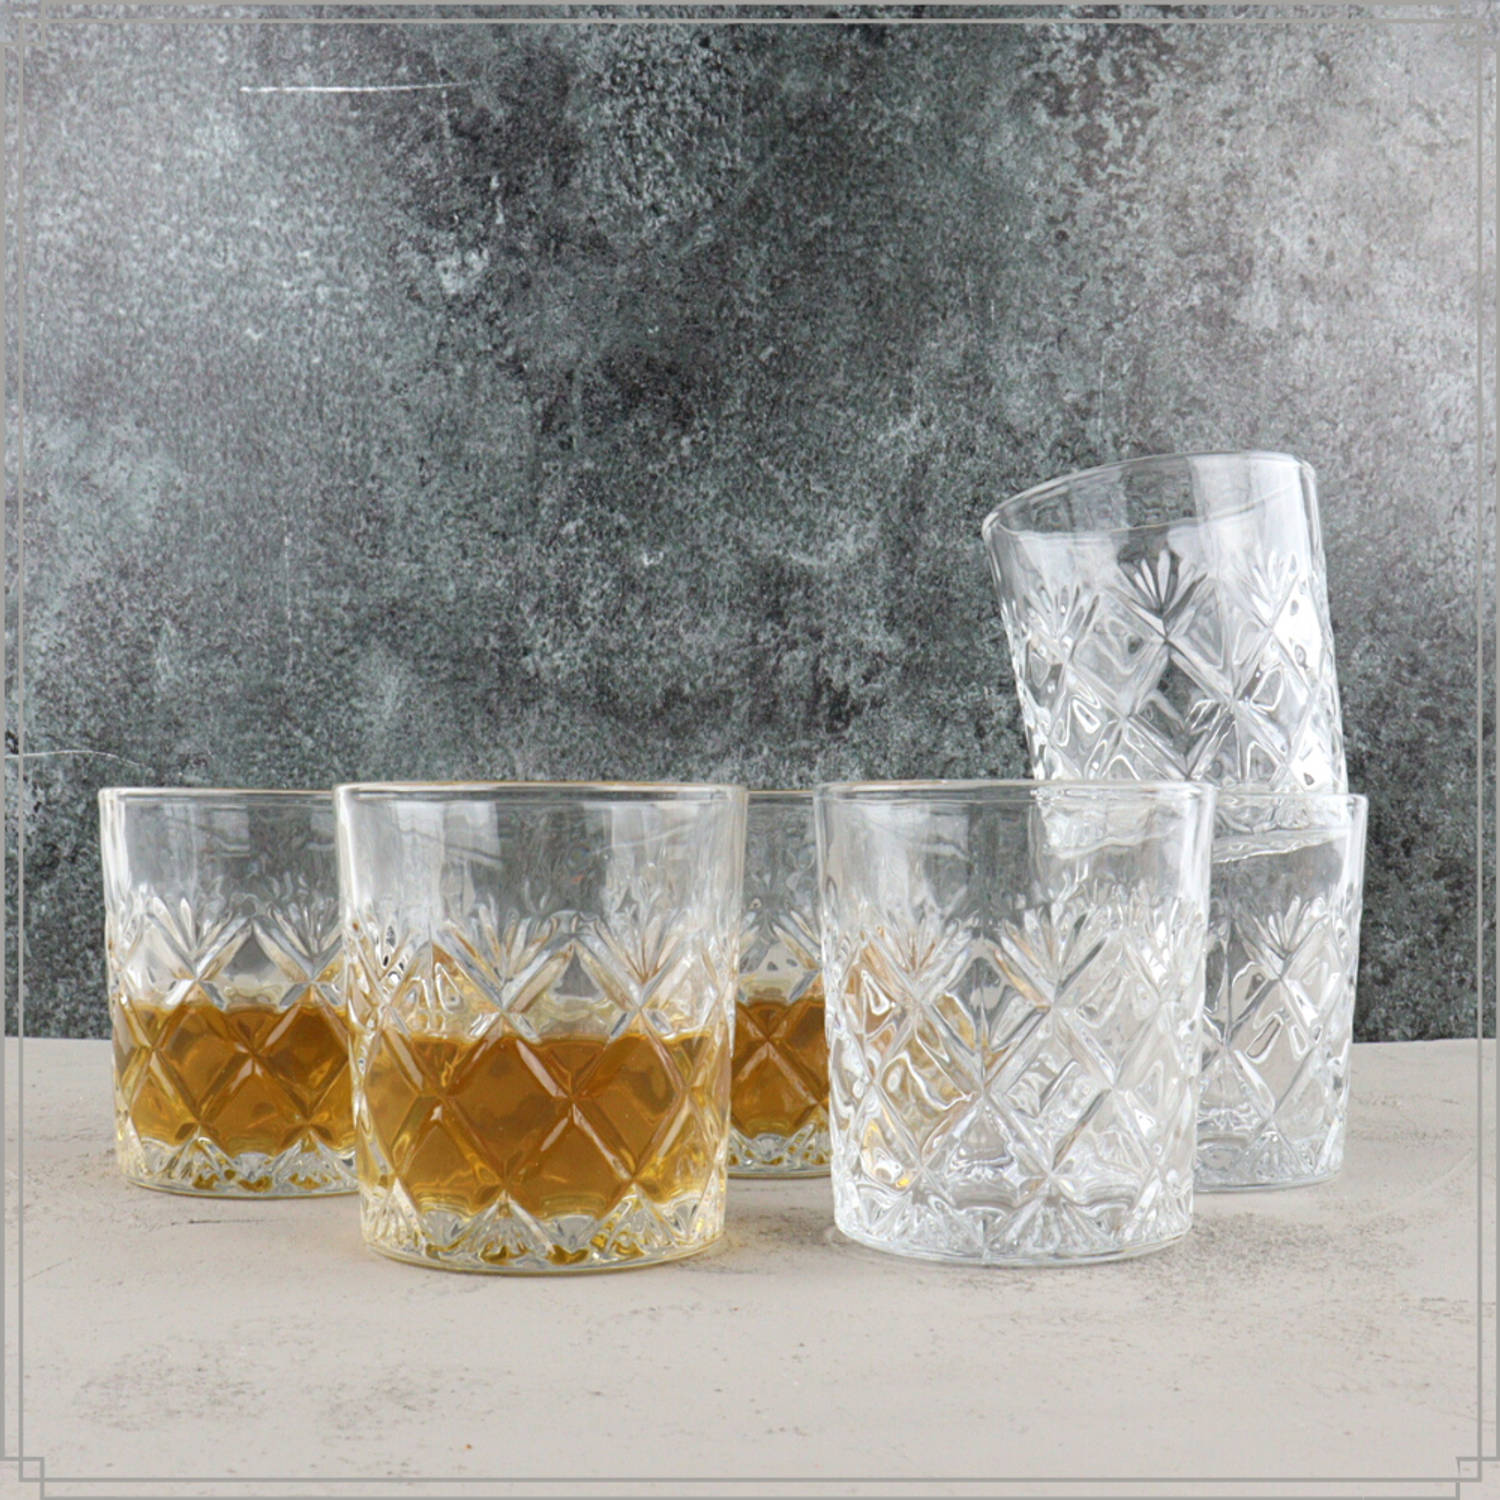 consensus Eigenlijk Niet ingewikkeld OTIX Whiskey glazen set - 6 Stuks - 78 x 85 mm | Blokker